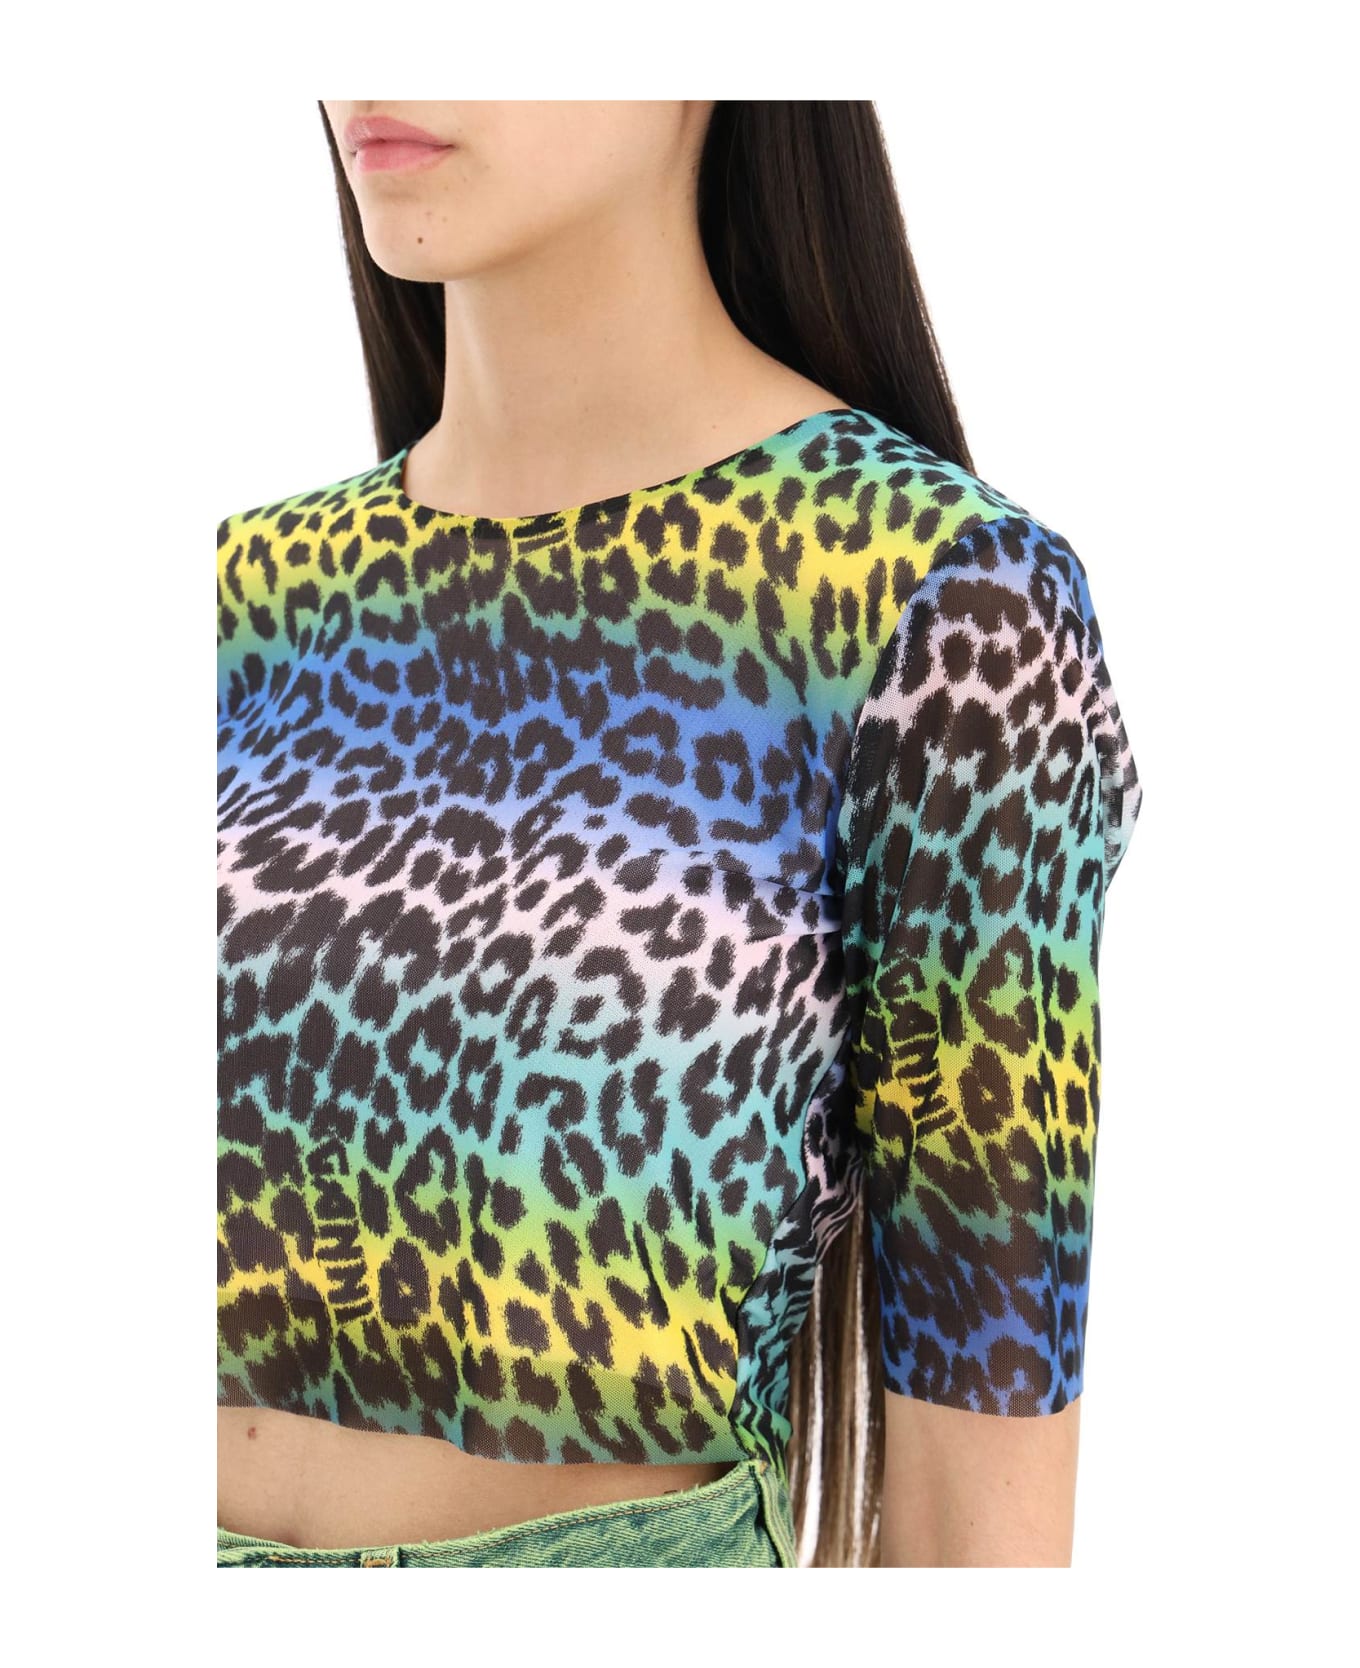 Ganni Multicolor Polyamide Sweater - MULTICOLOUR